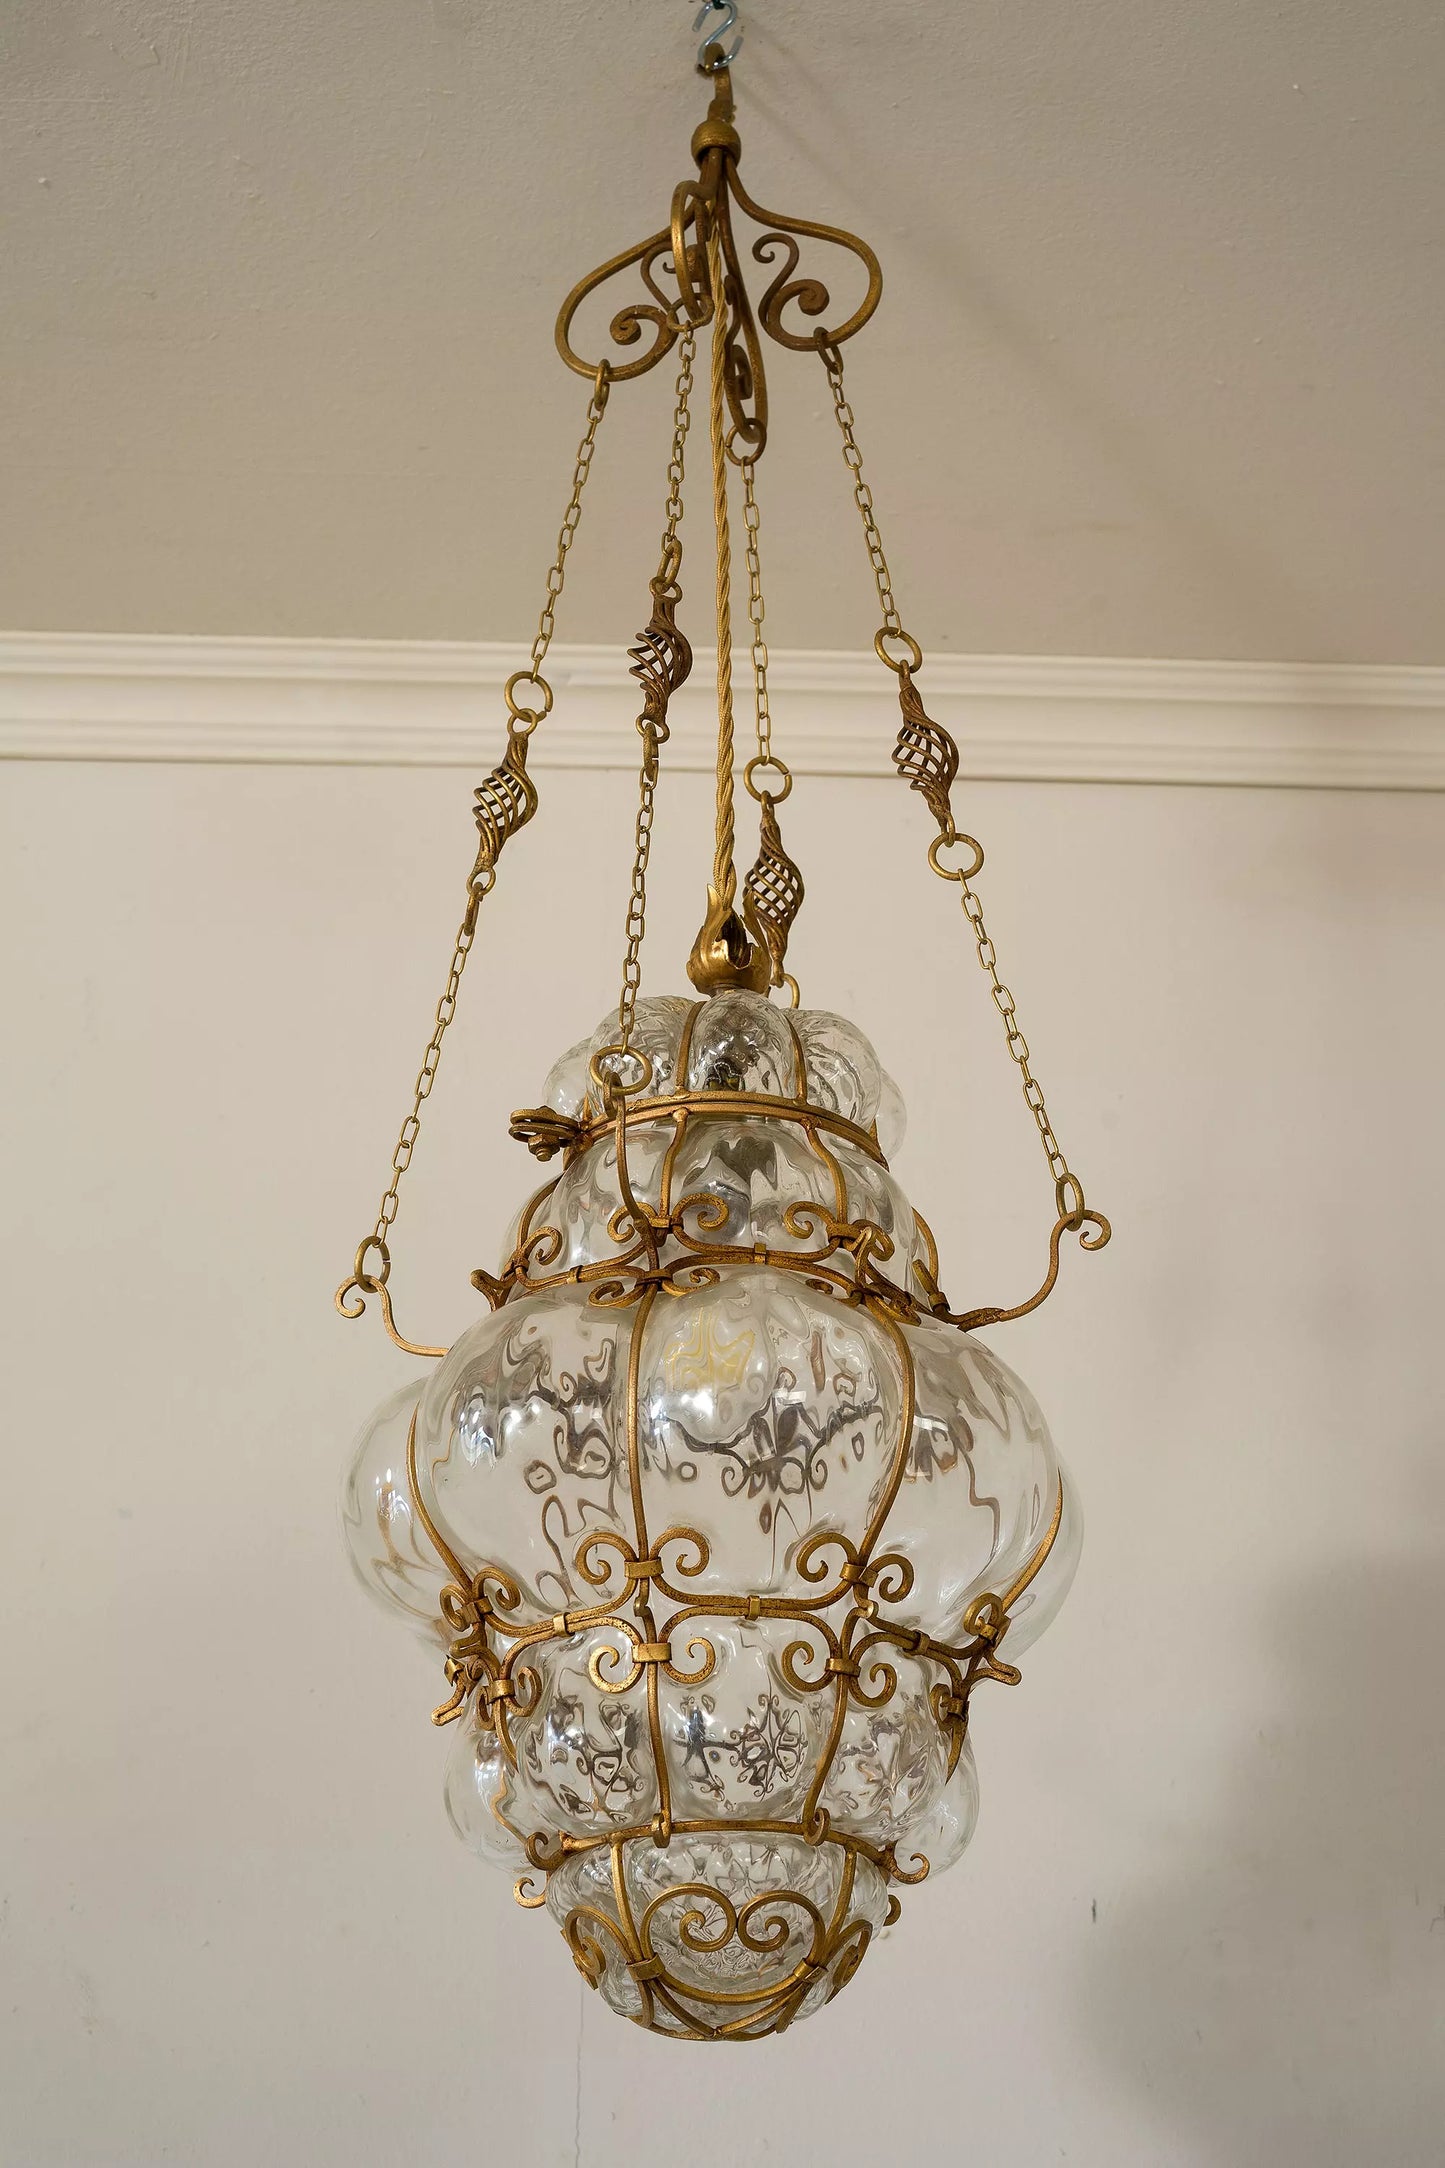 Antica lanterna veneziana: vetro soffiato racchiuso in una struttura metallica.| Lo Stile Italiano